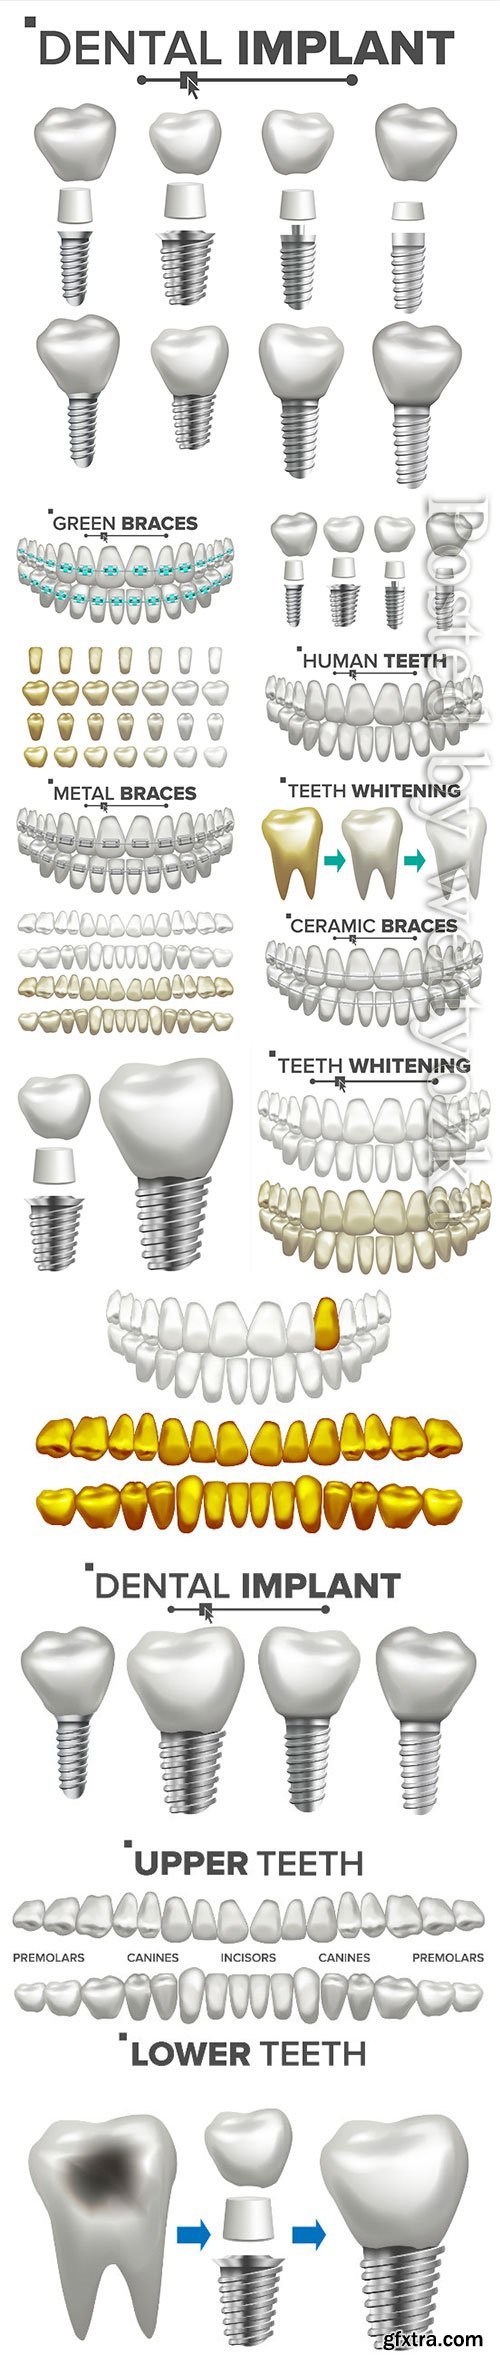 Dental implant illustration vector set